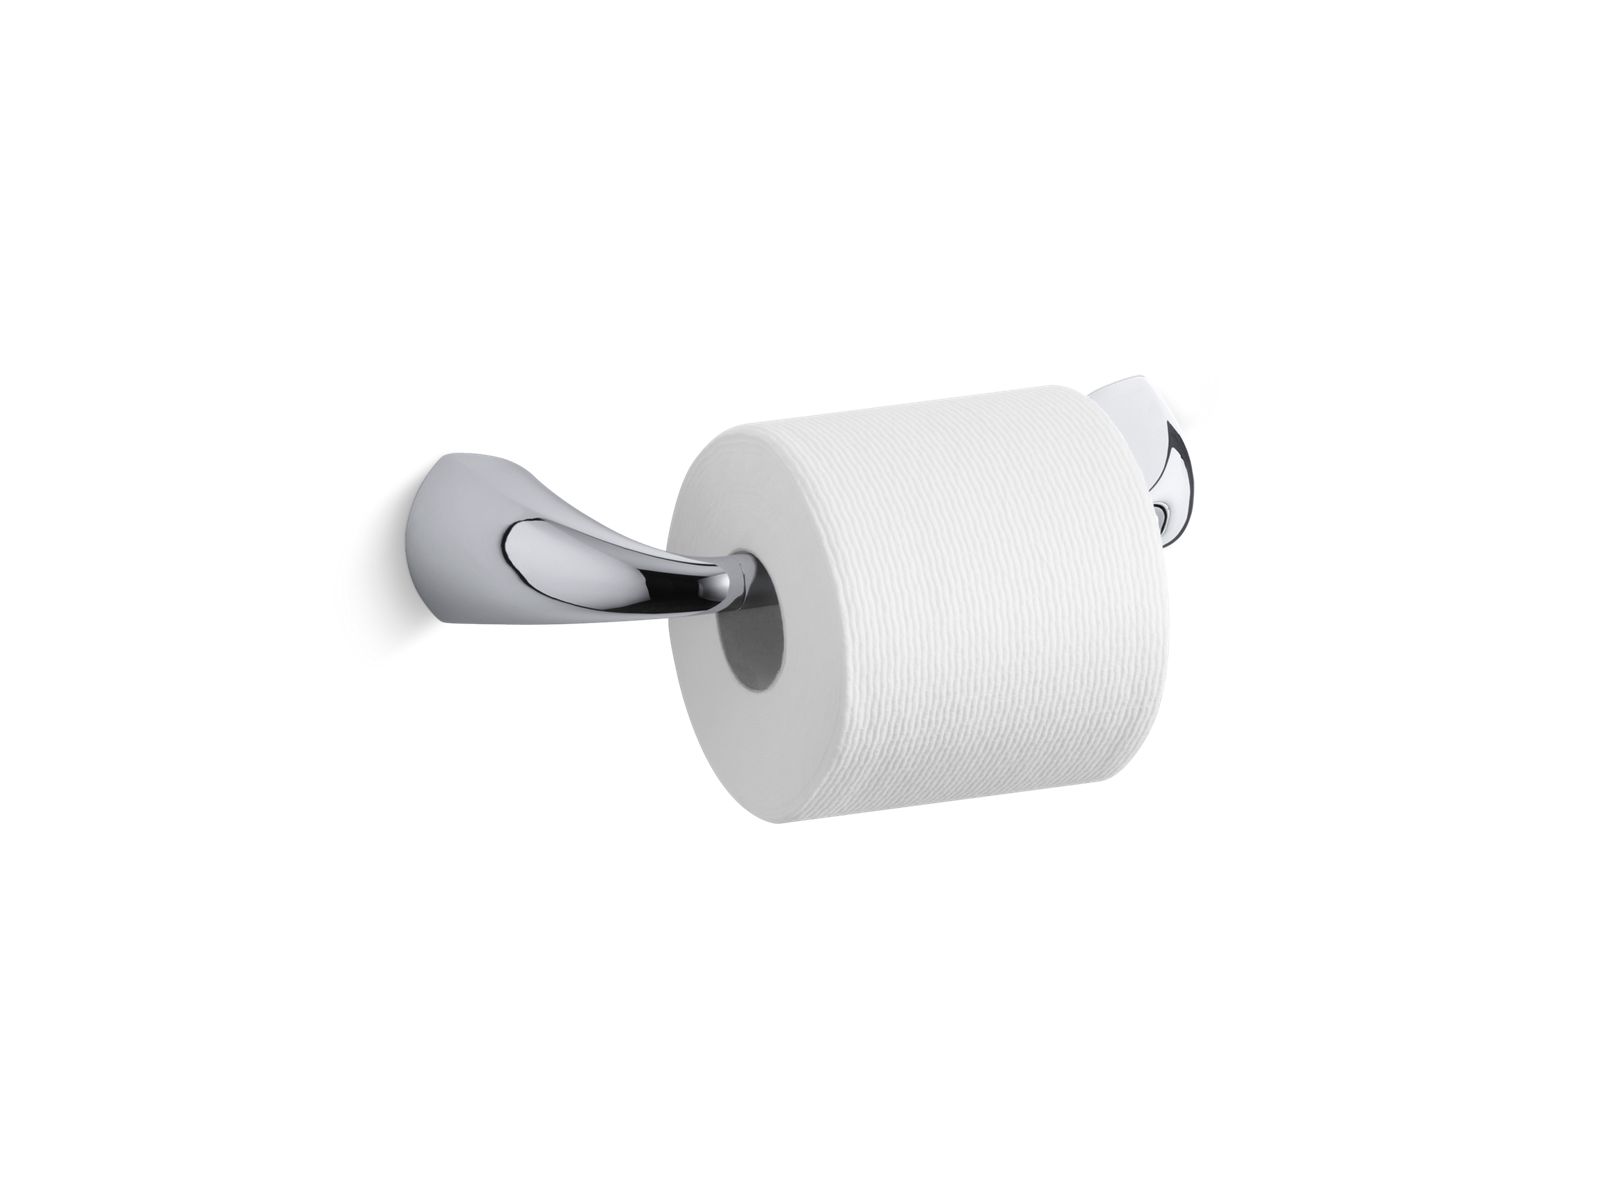 cheap toilet roll holder